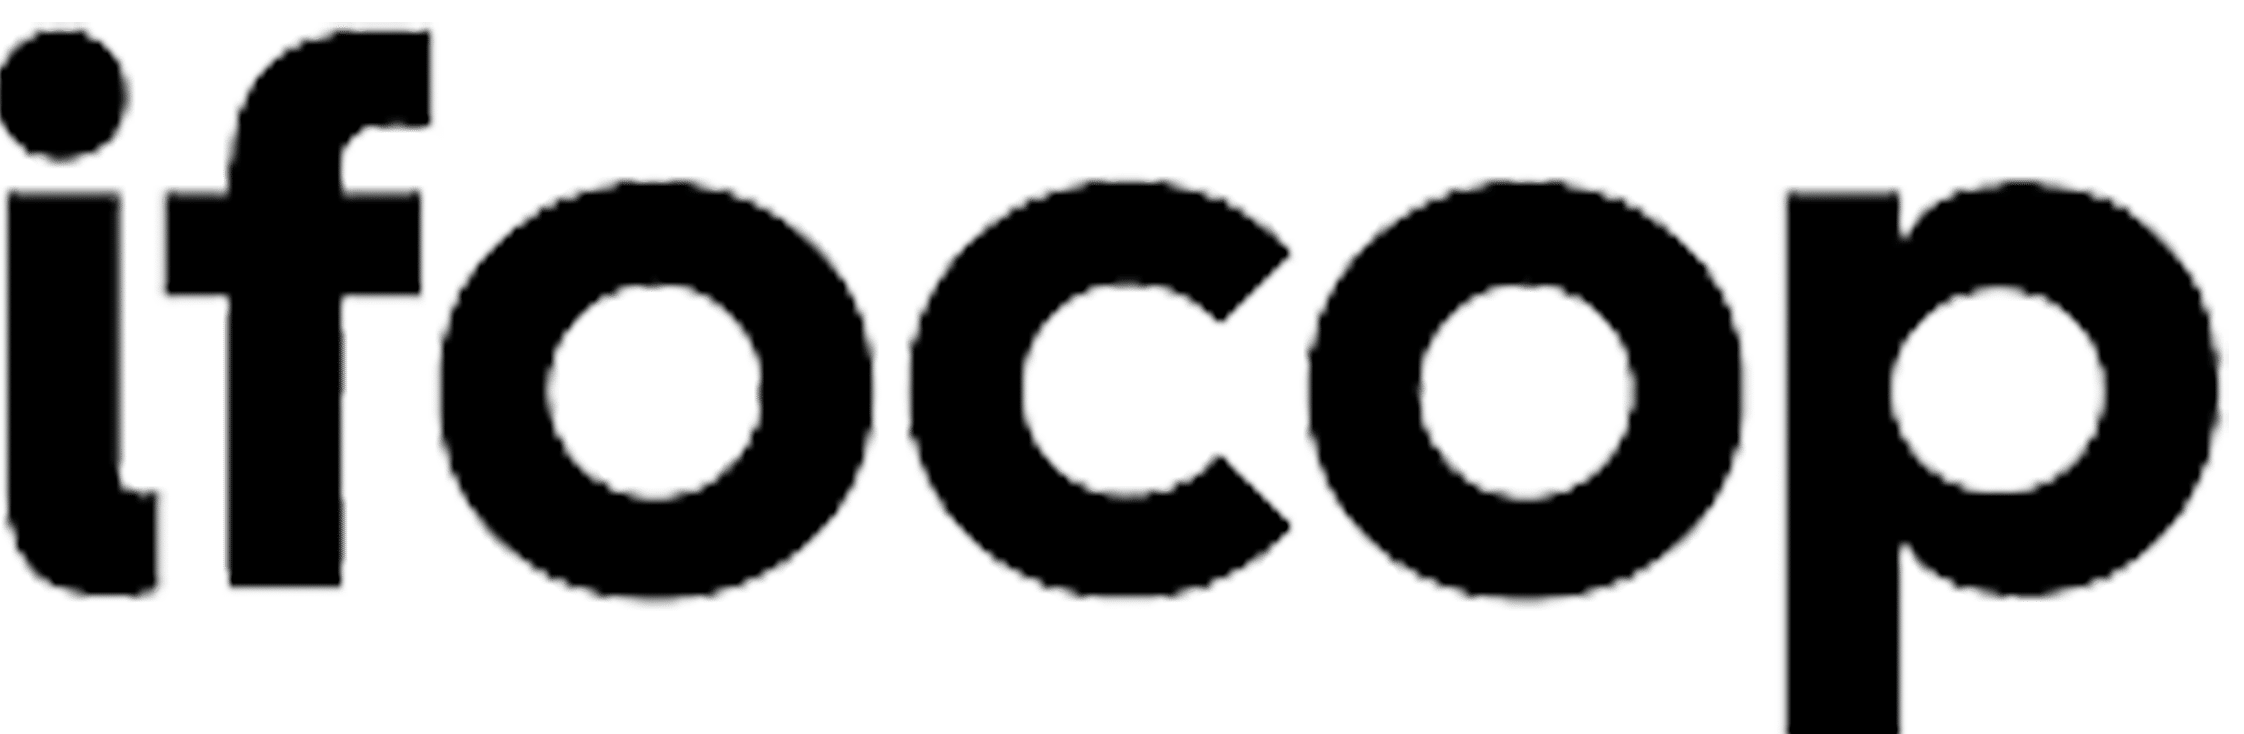 logo_ifocop